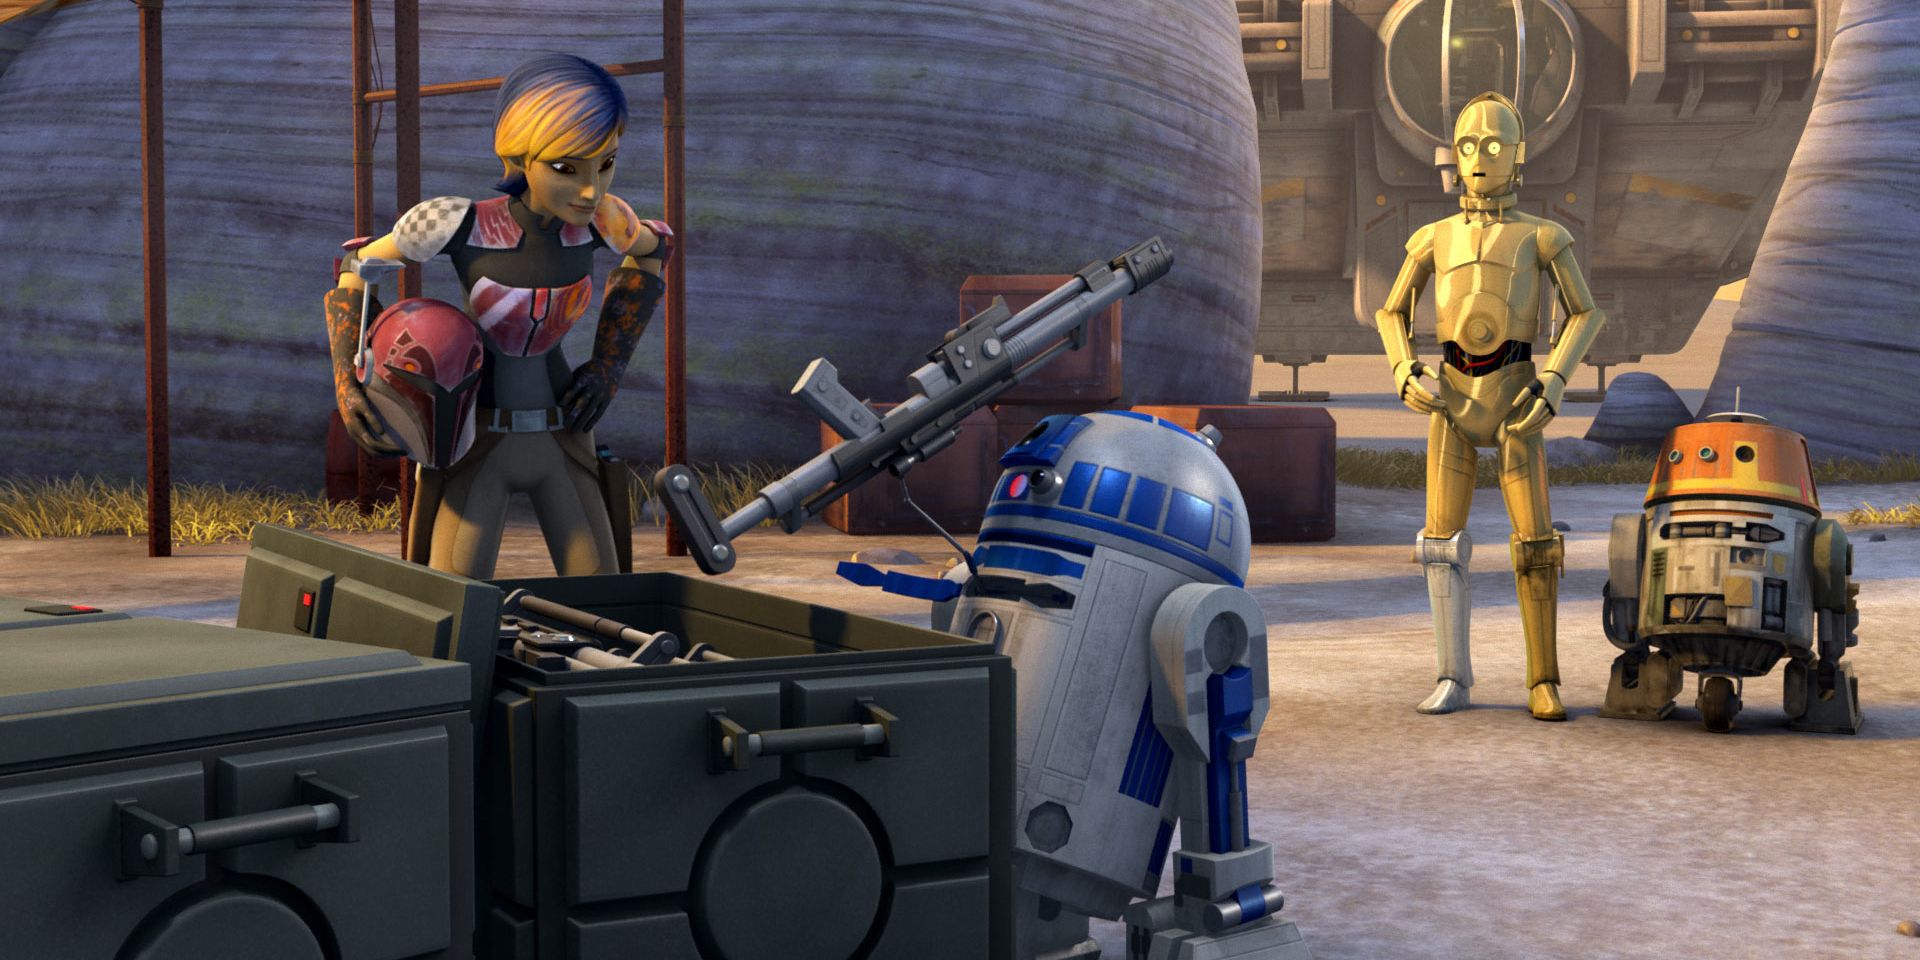 スター・ウォーズ 反乱者たち シーズン 1 エピソード 3 R2-D2 と C-3PO がゴースト クルーと出会う